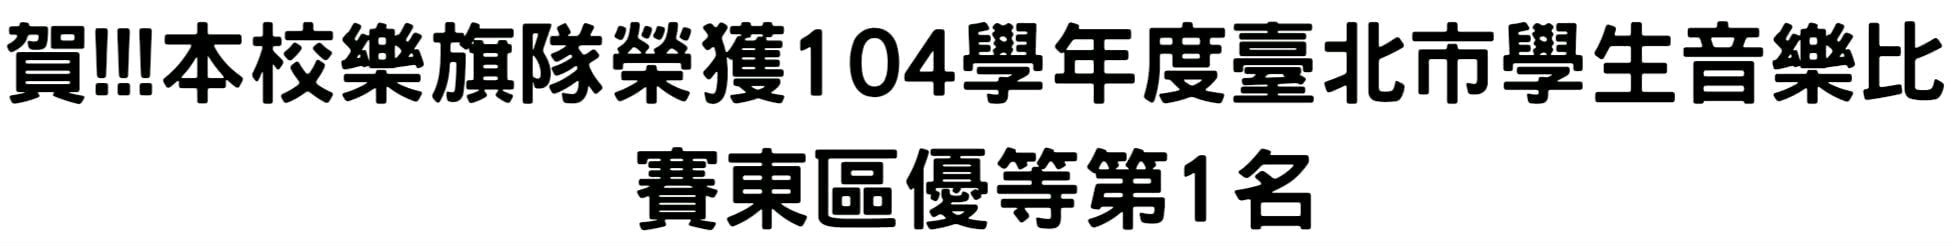 賀!!!本校樂旗隊榮獲104學年度臺北市學生音樂比賽東區優等第1名